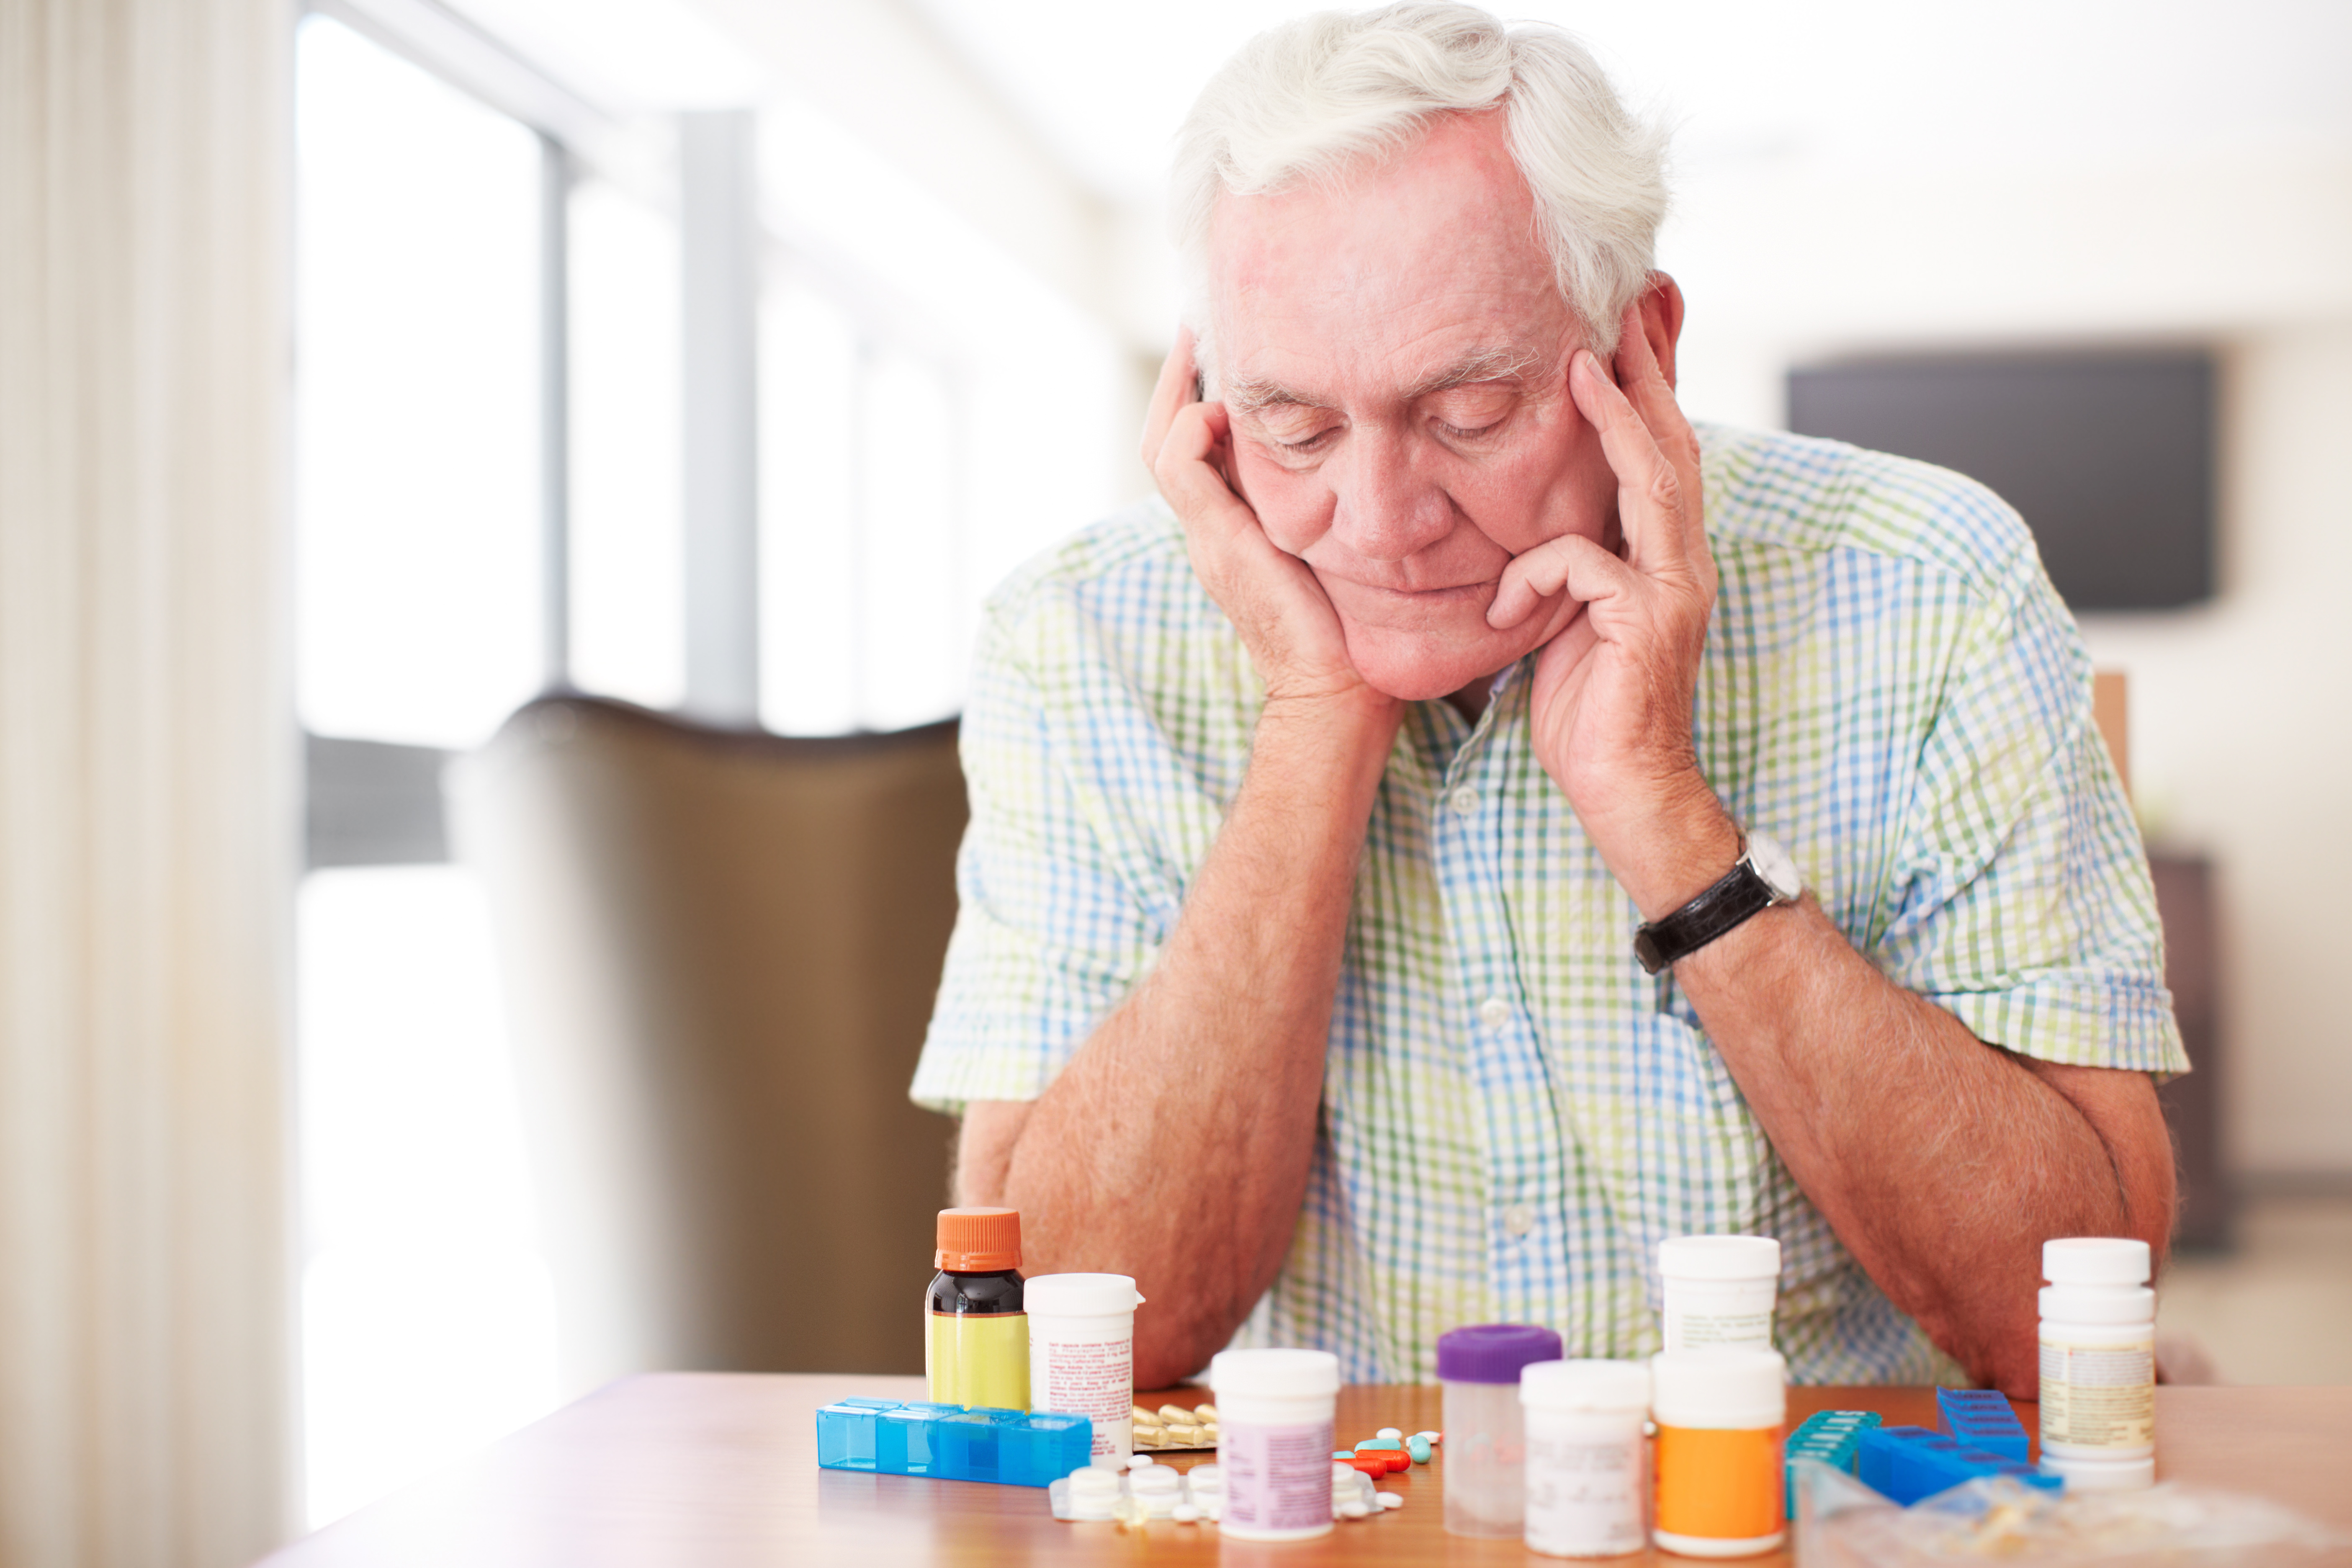 Senior man looking at lots of medication